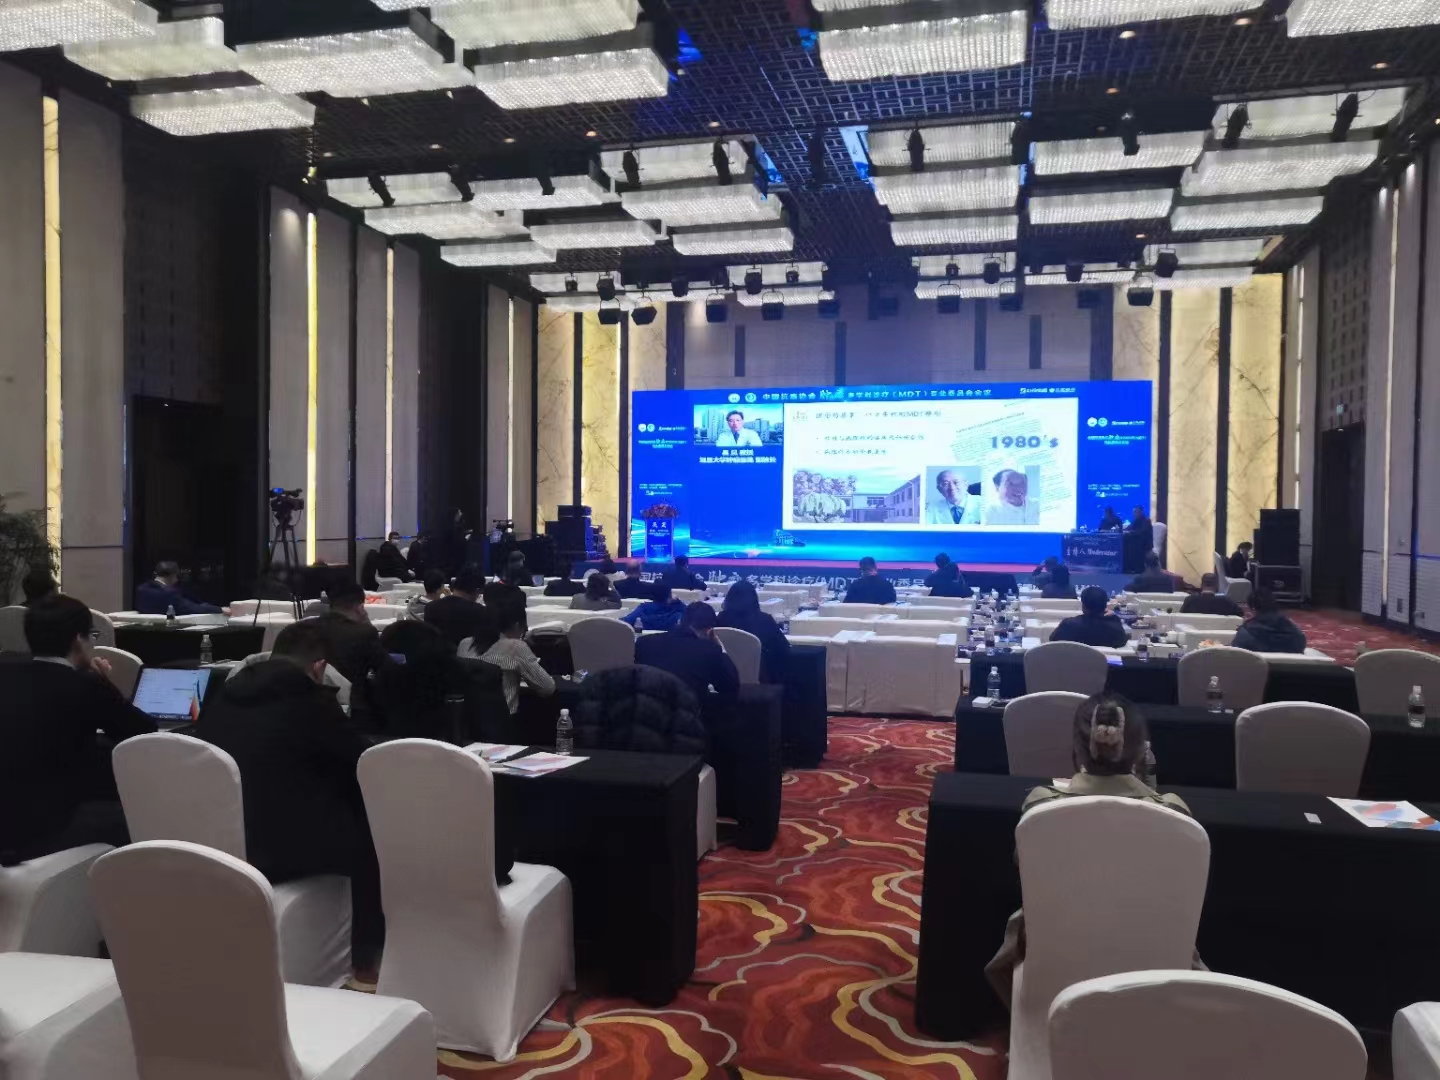 中国抗癌协会MDT专家会会议连线直播